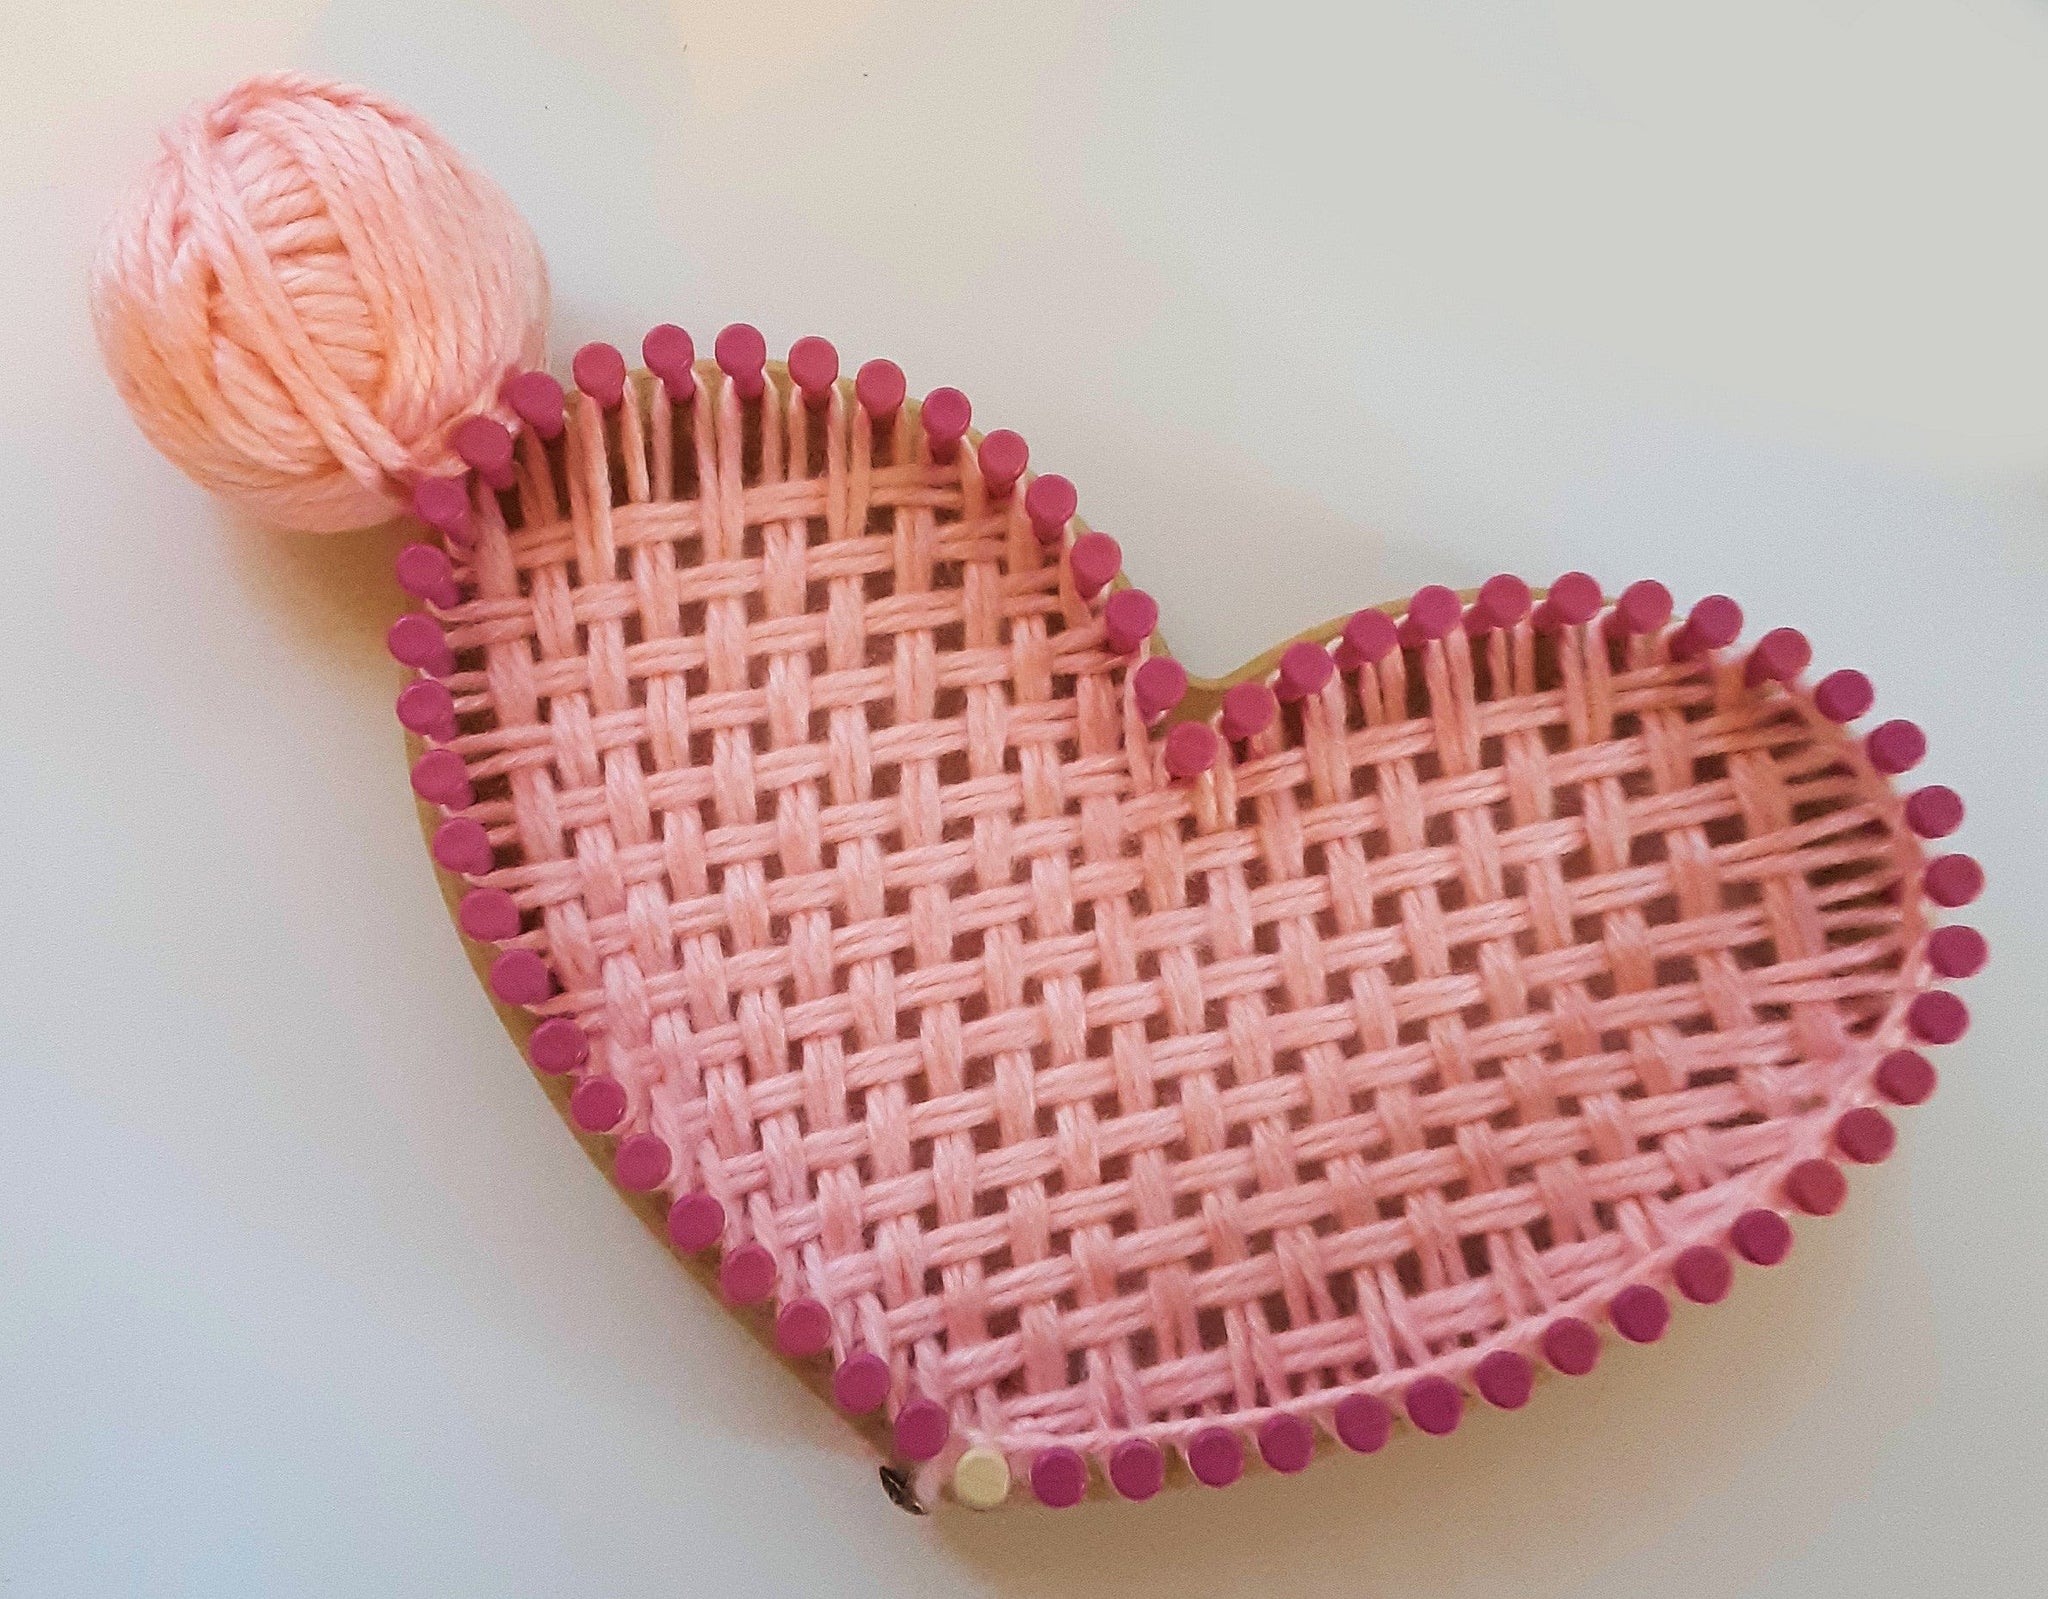 Loom Knit ePattern: Lace Heart Sweater Dress – CinDWood Looms